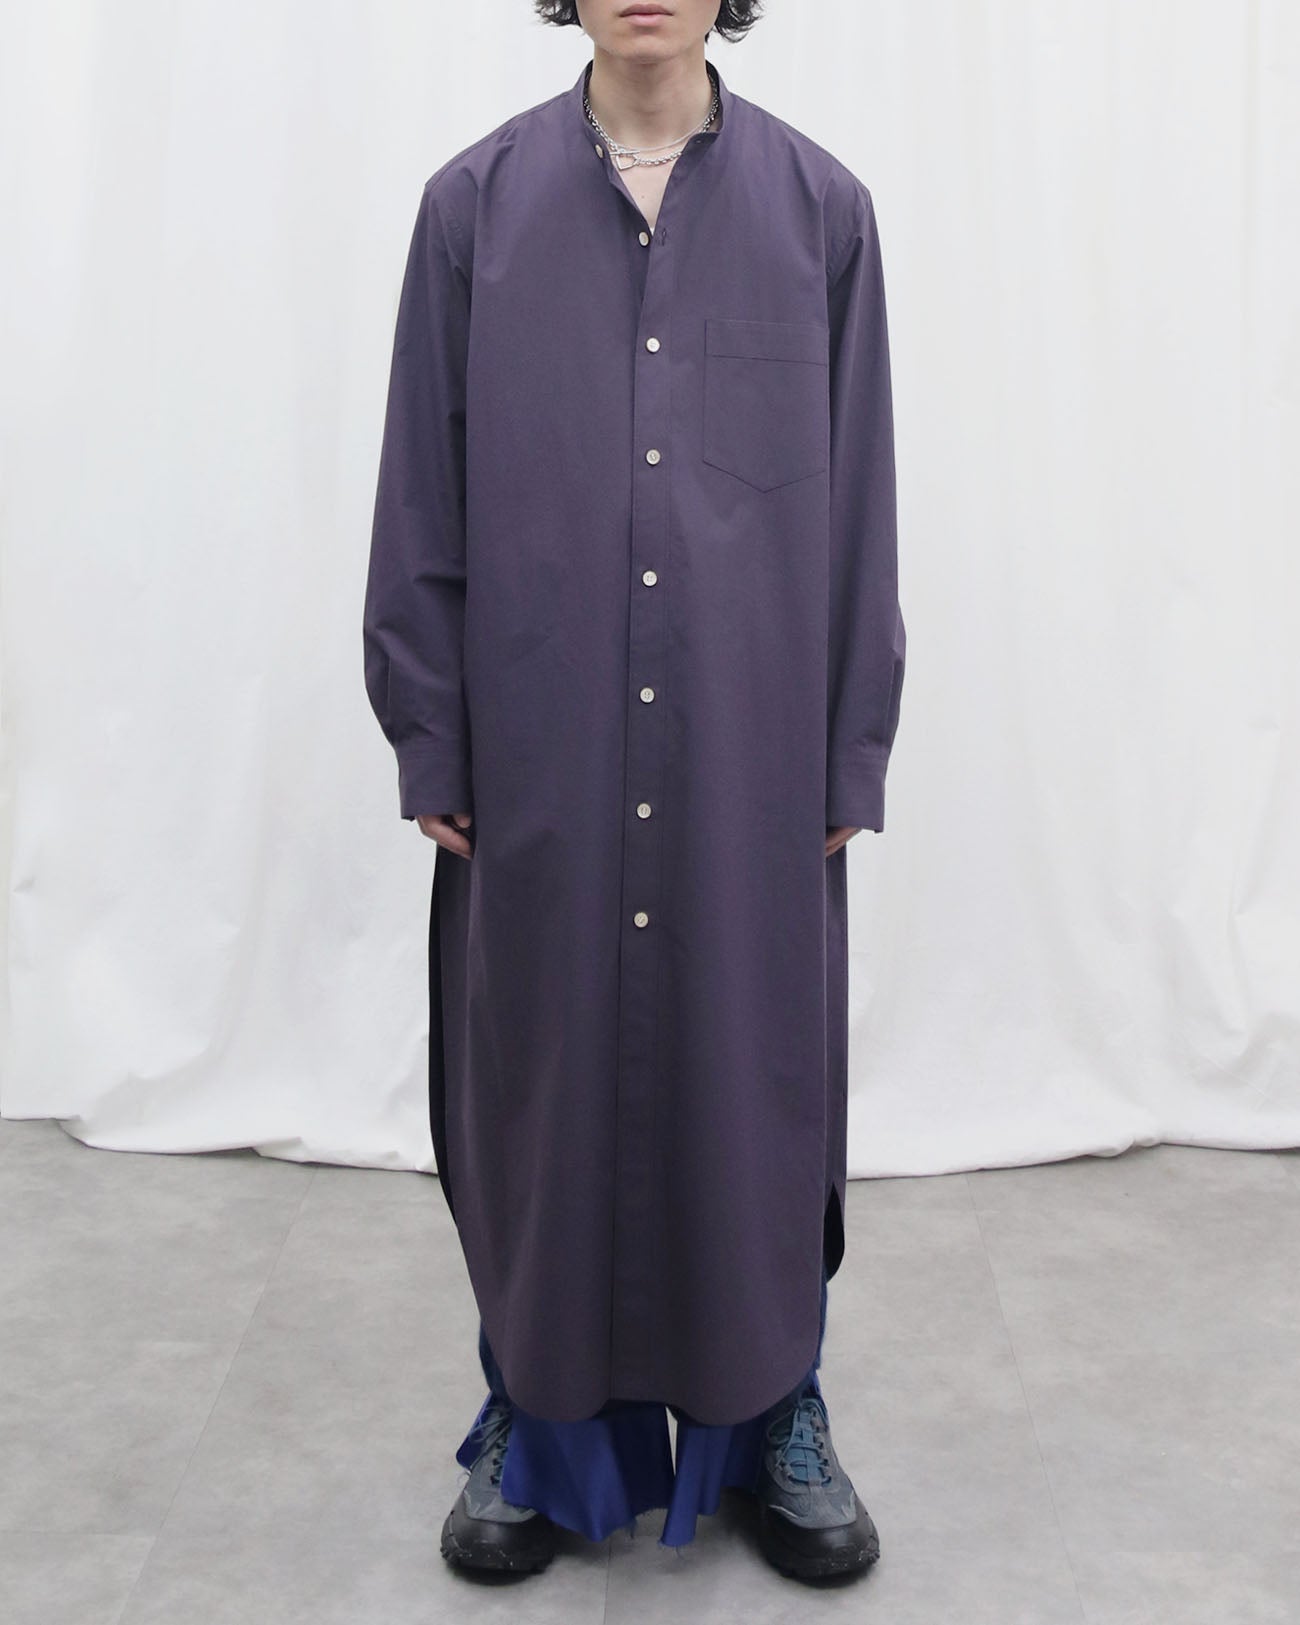 Long Shirt – purple